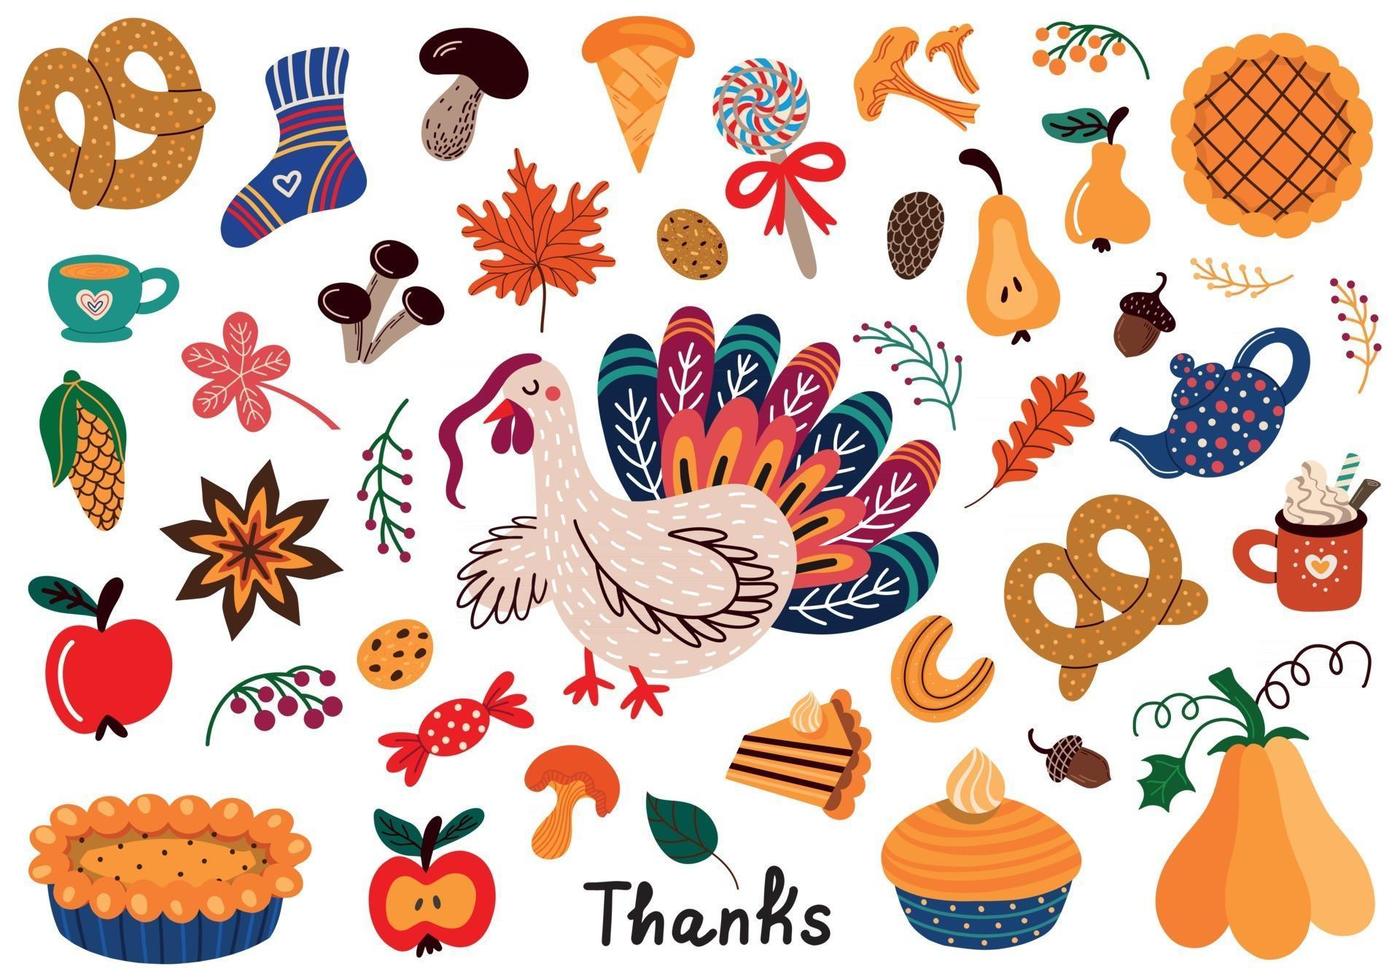 illustrazioni vettoriali di cibo con tacchino per il ringraziamento